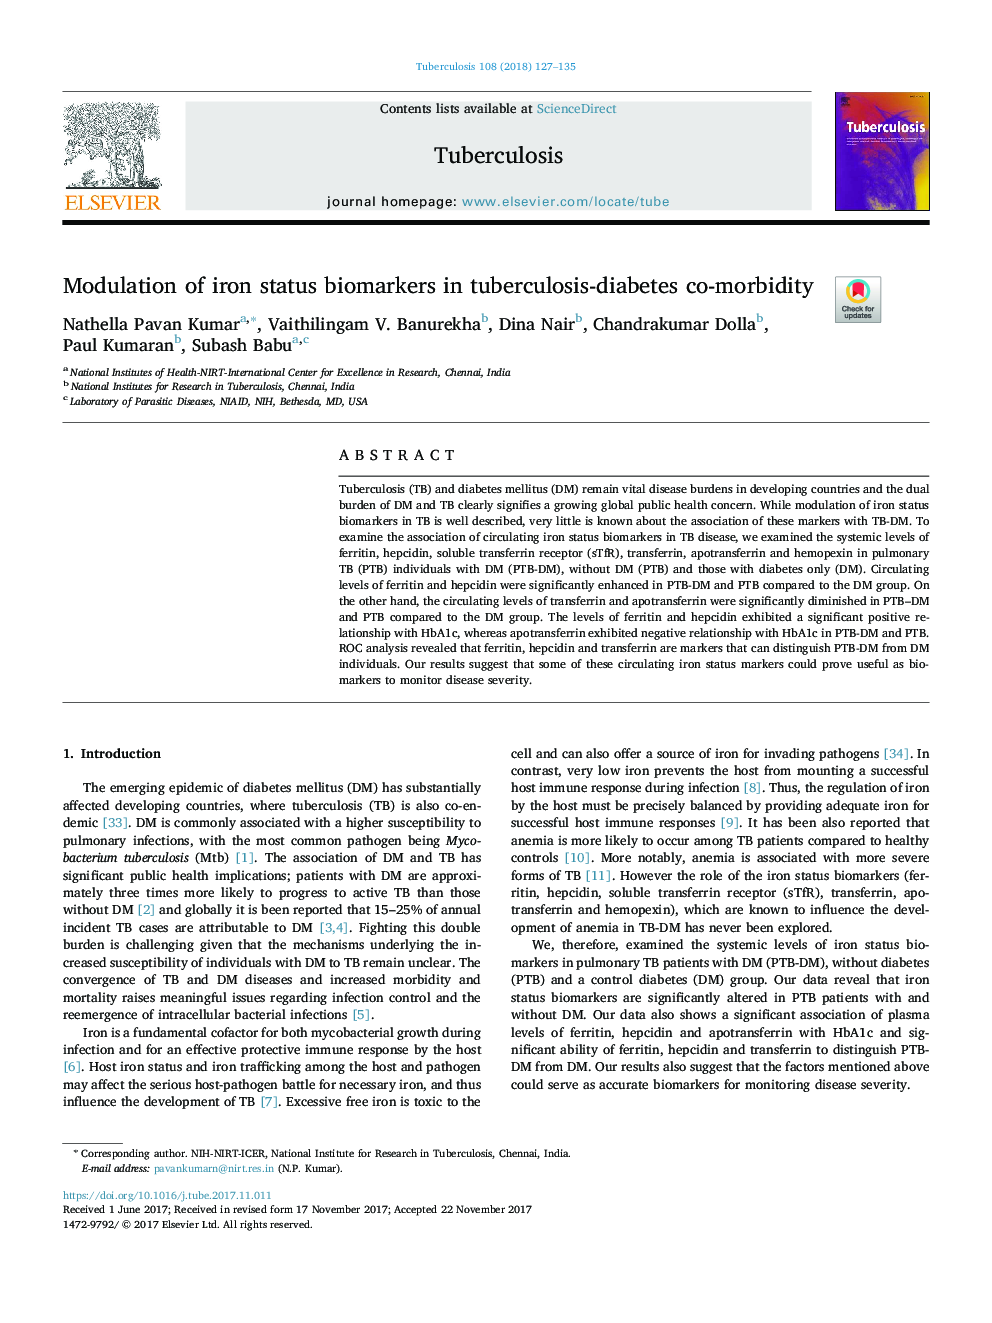 مدولاسیون بیومارکرهای وضعیت آهن در بیماری های مرتبط با بیماری سل- دیابت 